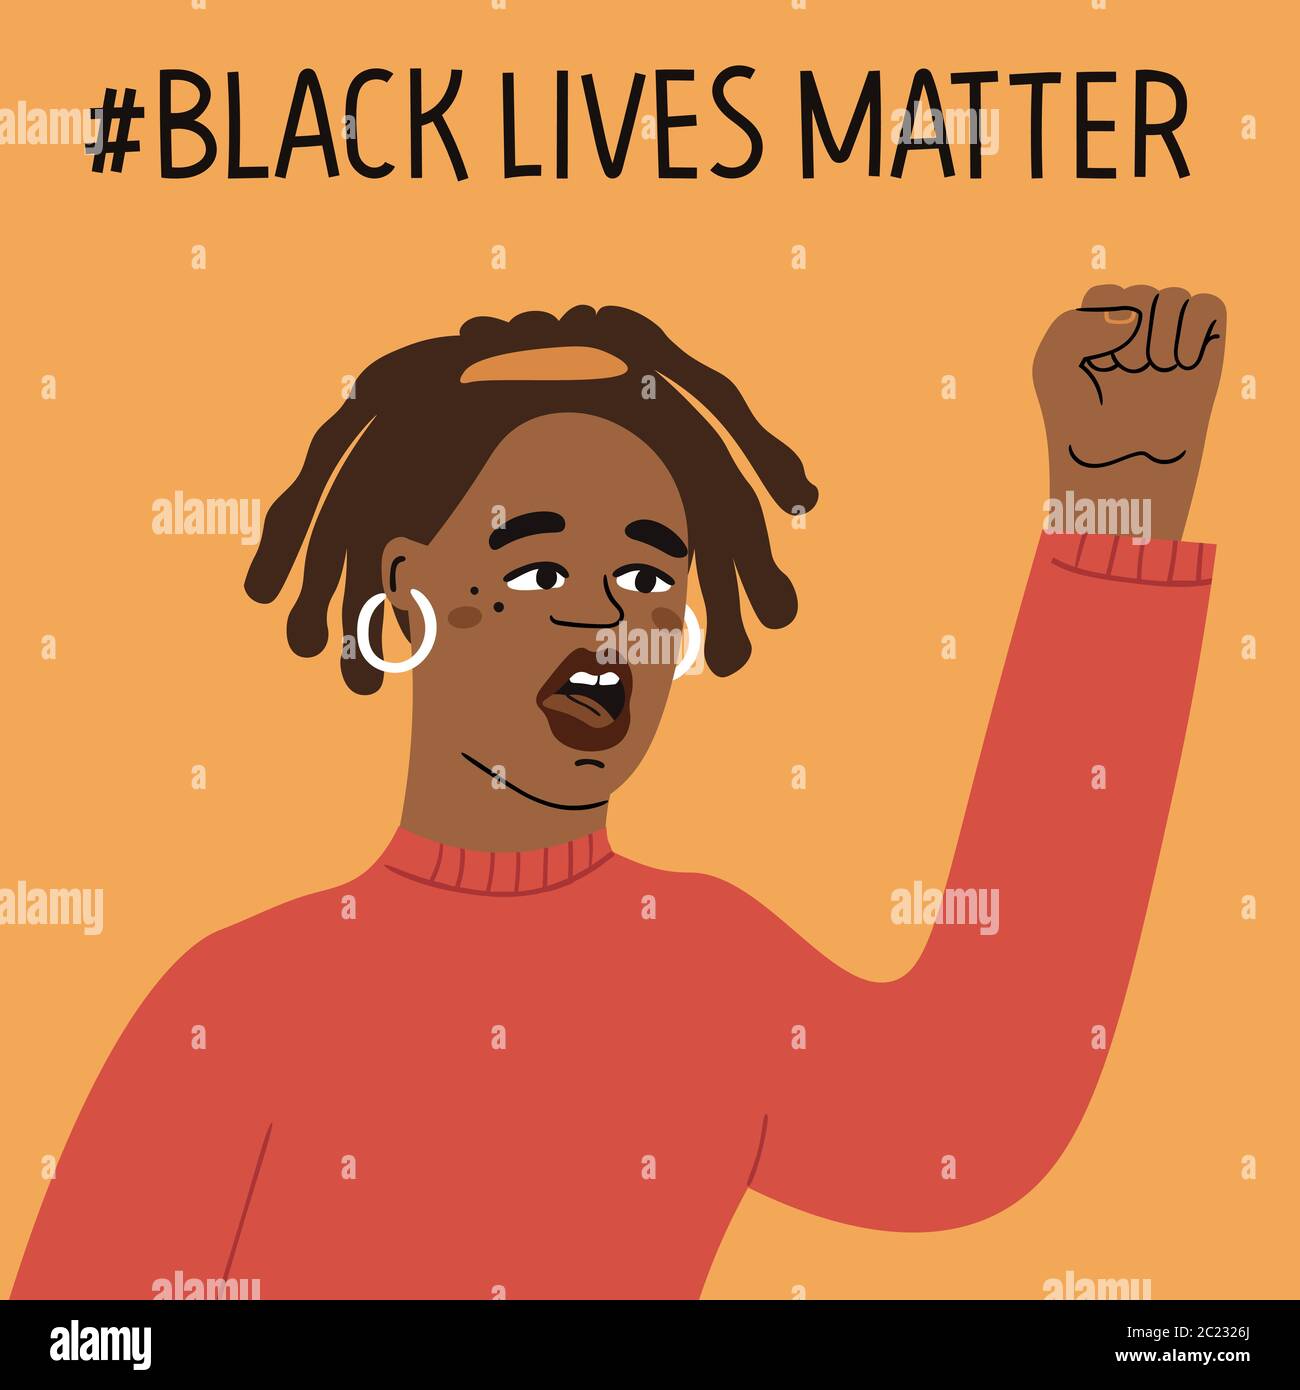 Kein Rassismus-Konzept. Schwarze Leben sind wichtig. Flache Social Card, Poster, Banner mit Text. Handgezeichneter Vektor-Satz. Stock Vektor